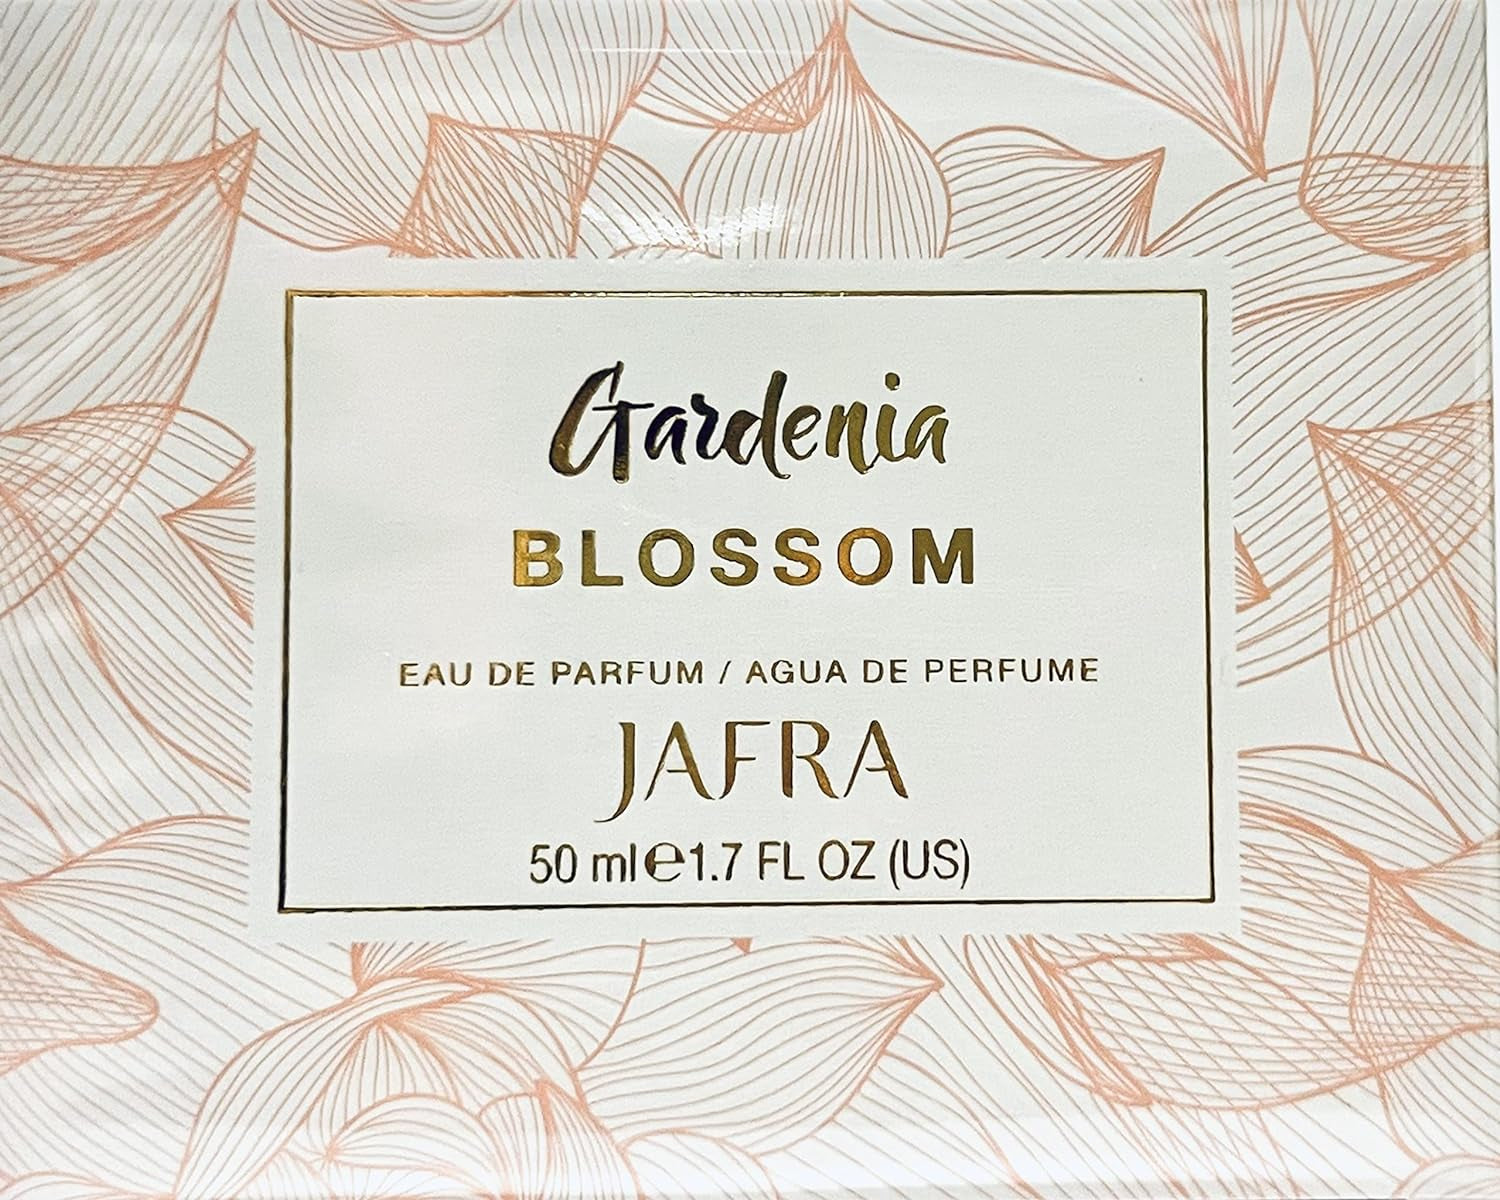 Gardenia Blossom Eau de Parfum by